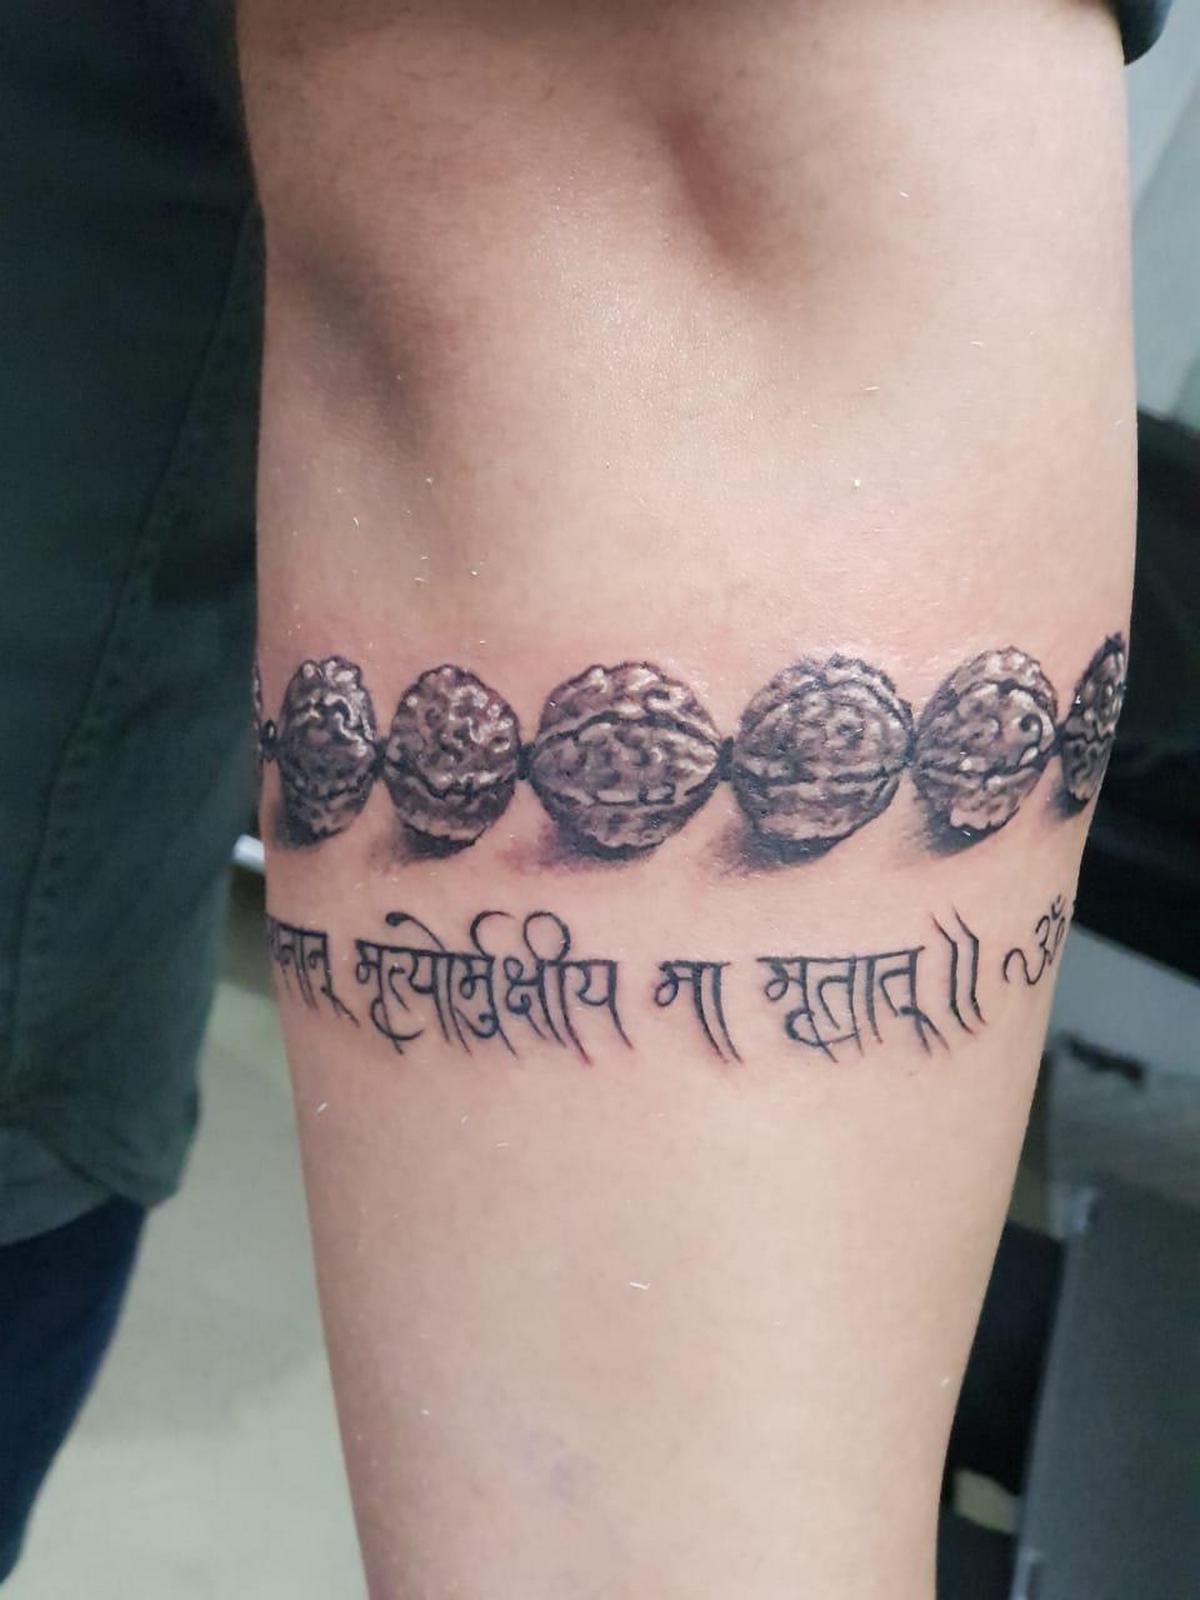 Tattoo uploaded by Kartik Patil • Mrityunjay mantr trishul tattoo • Tattoodo